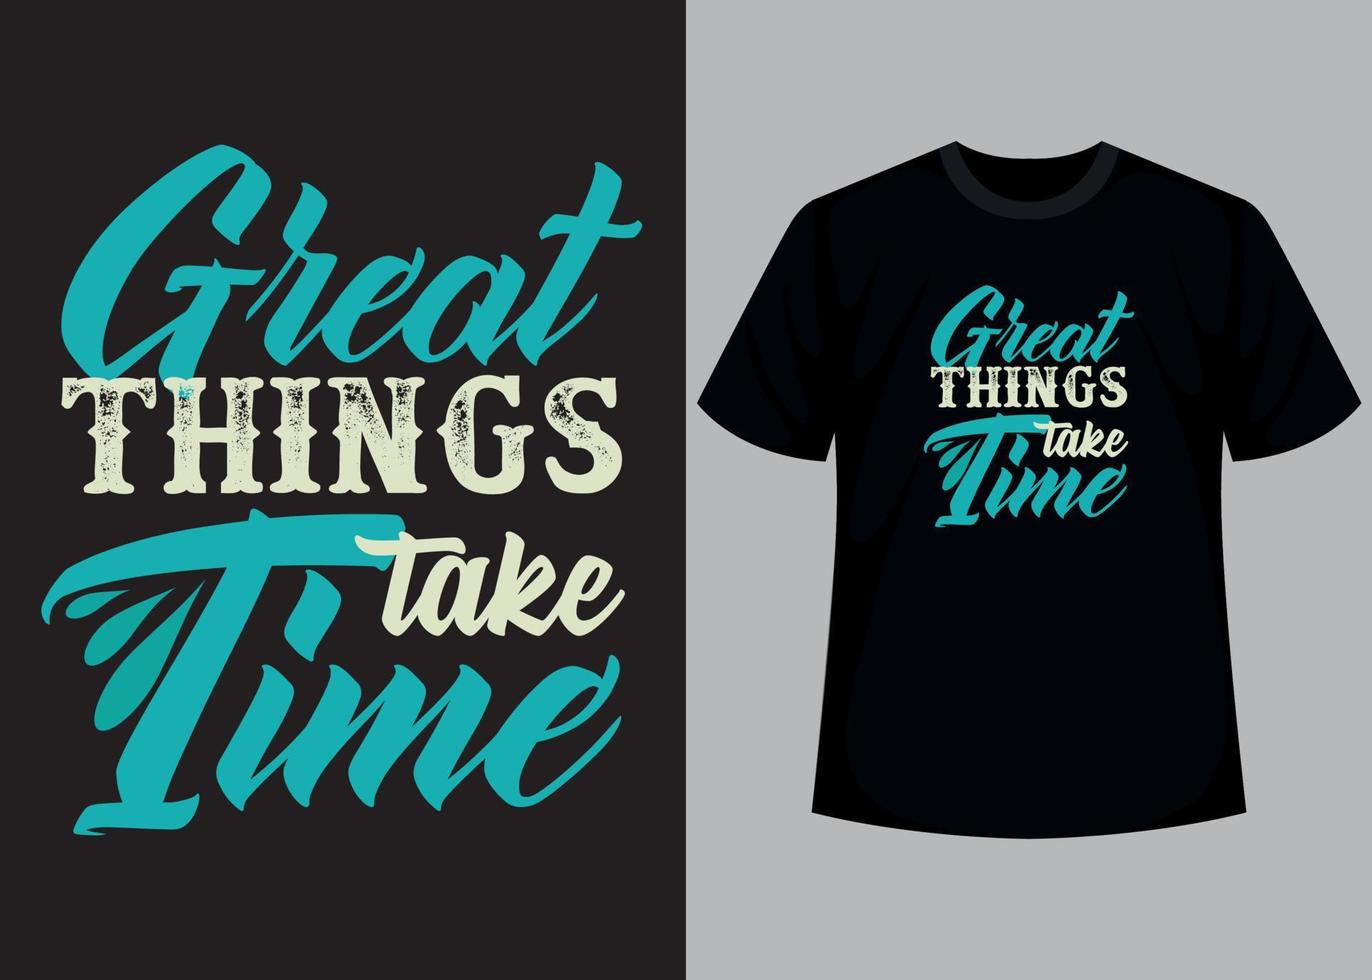 große dinge brauchen zeit typografie t-shirt design vektor